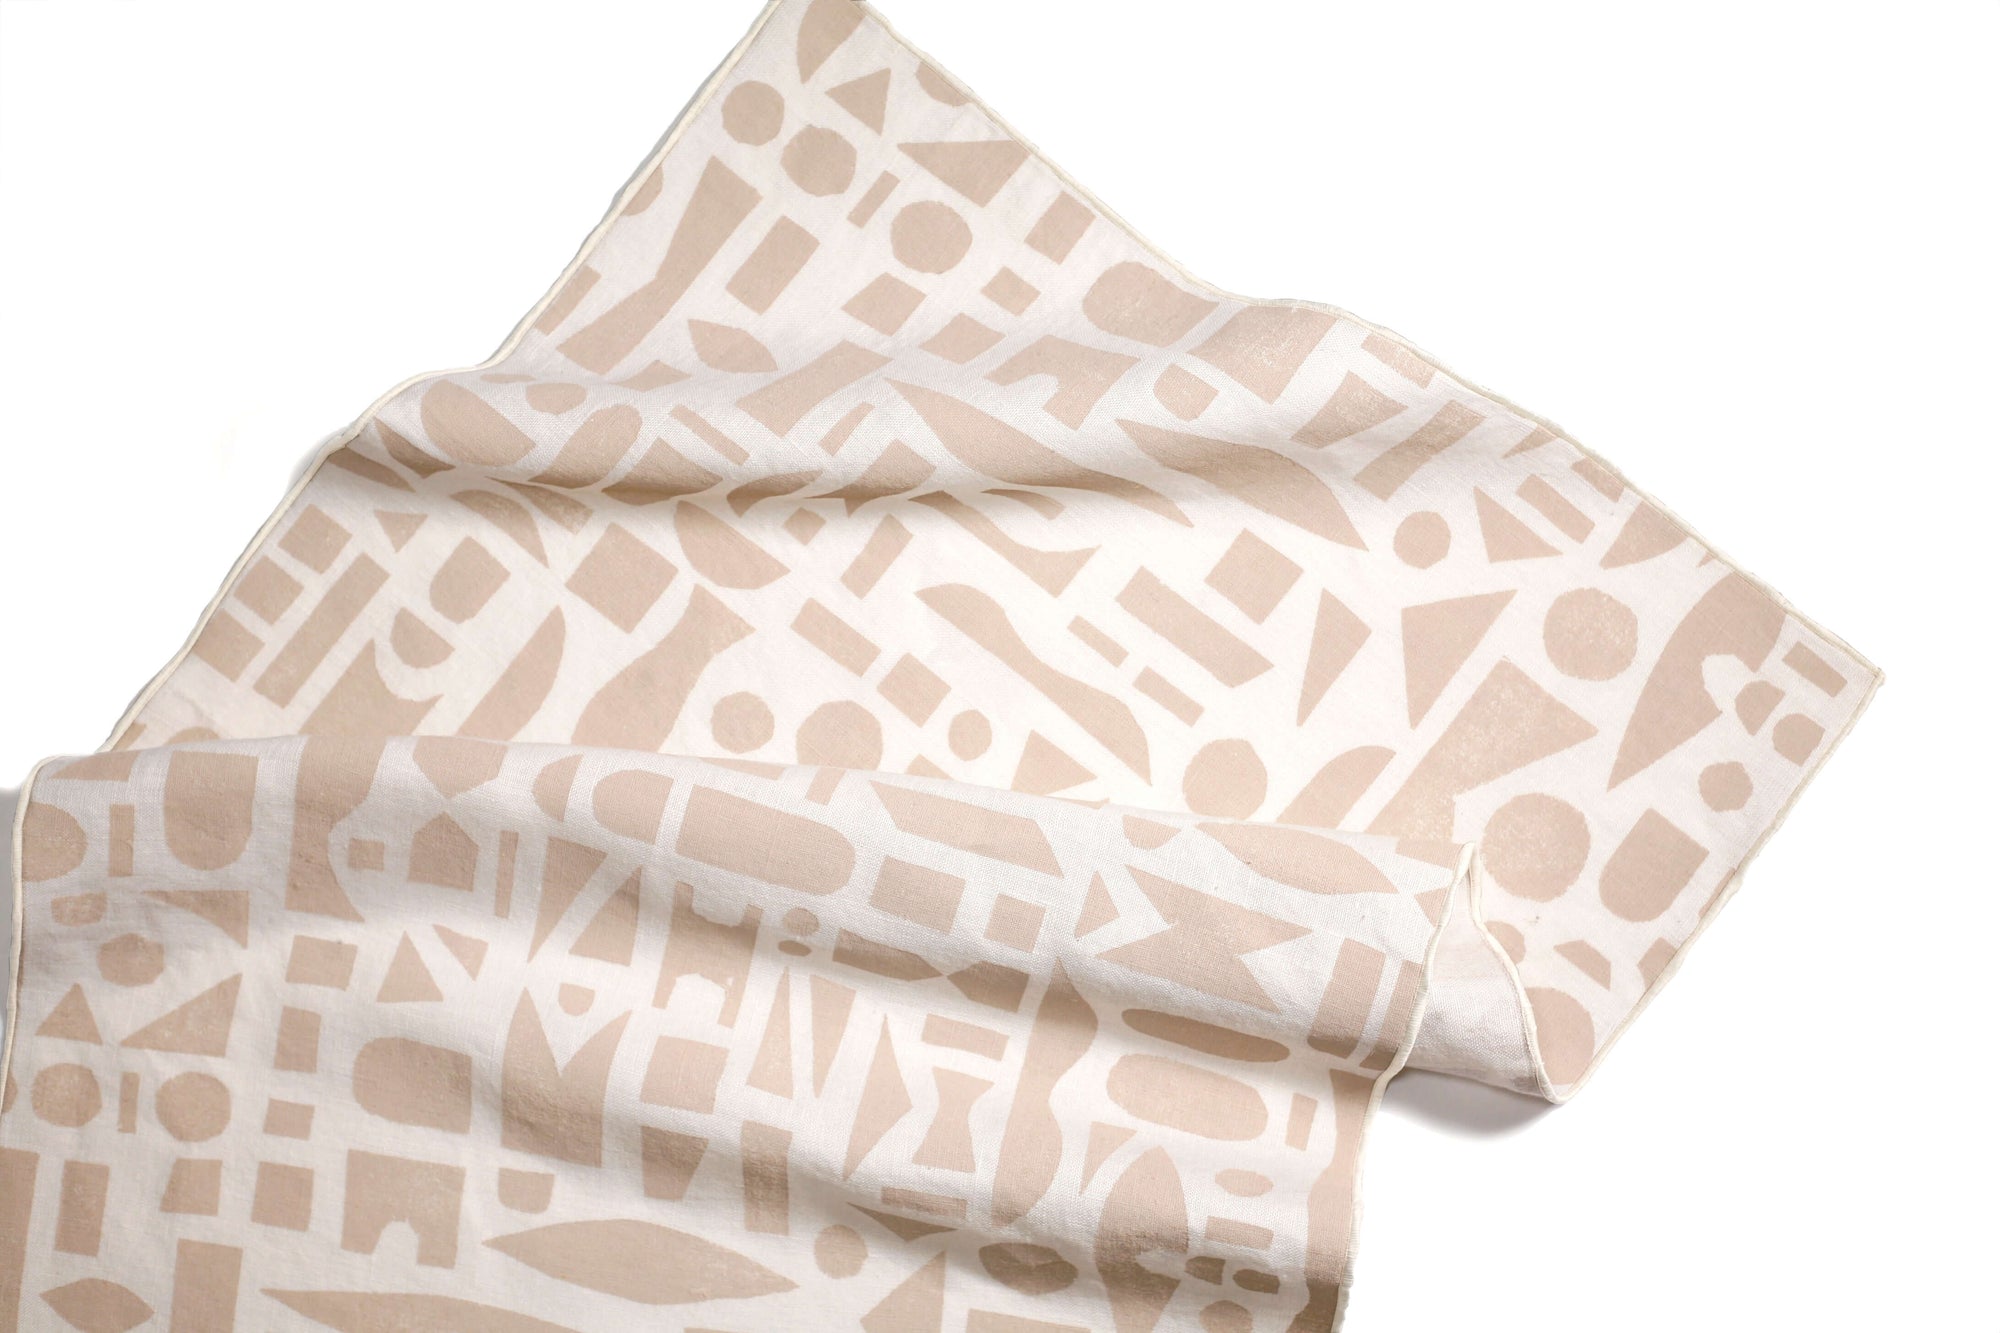 'Mixta' 100% Linen Tea Towel in Sand colorway